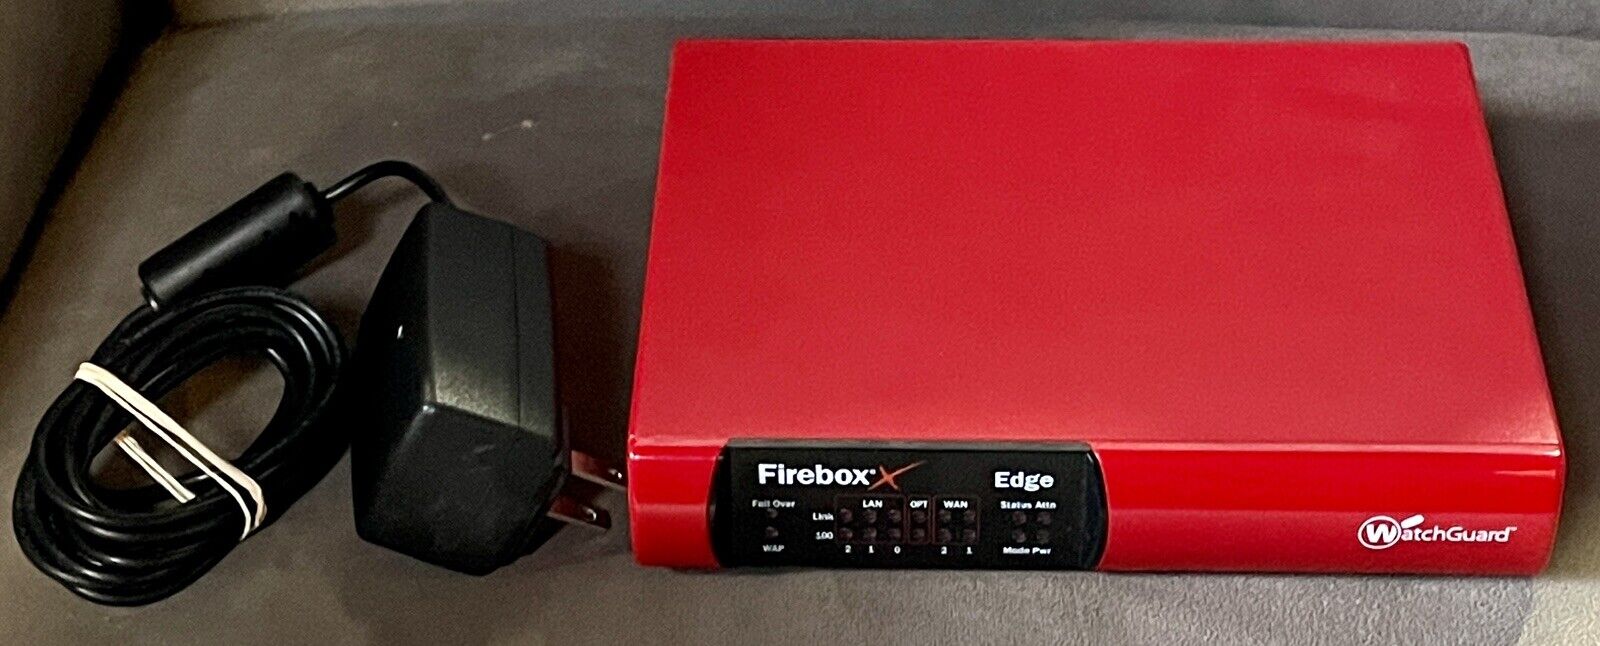 Watchguard Firebox #XP2E6 with Power Adapter